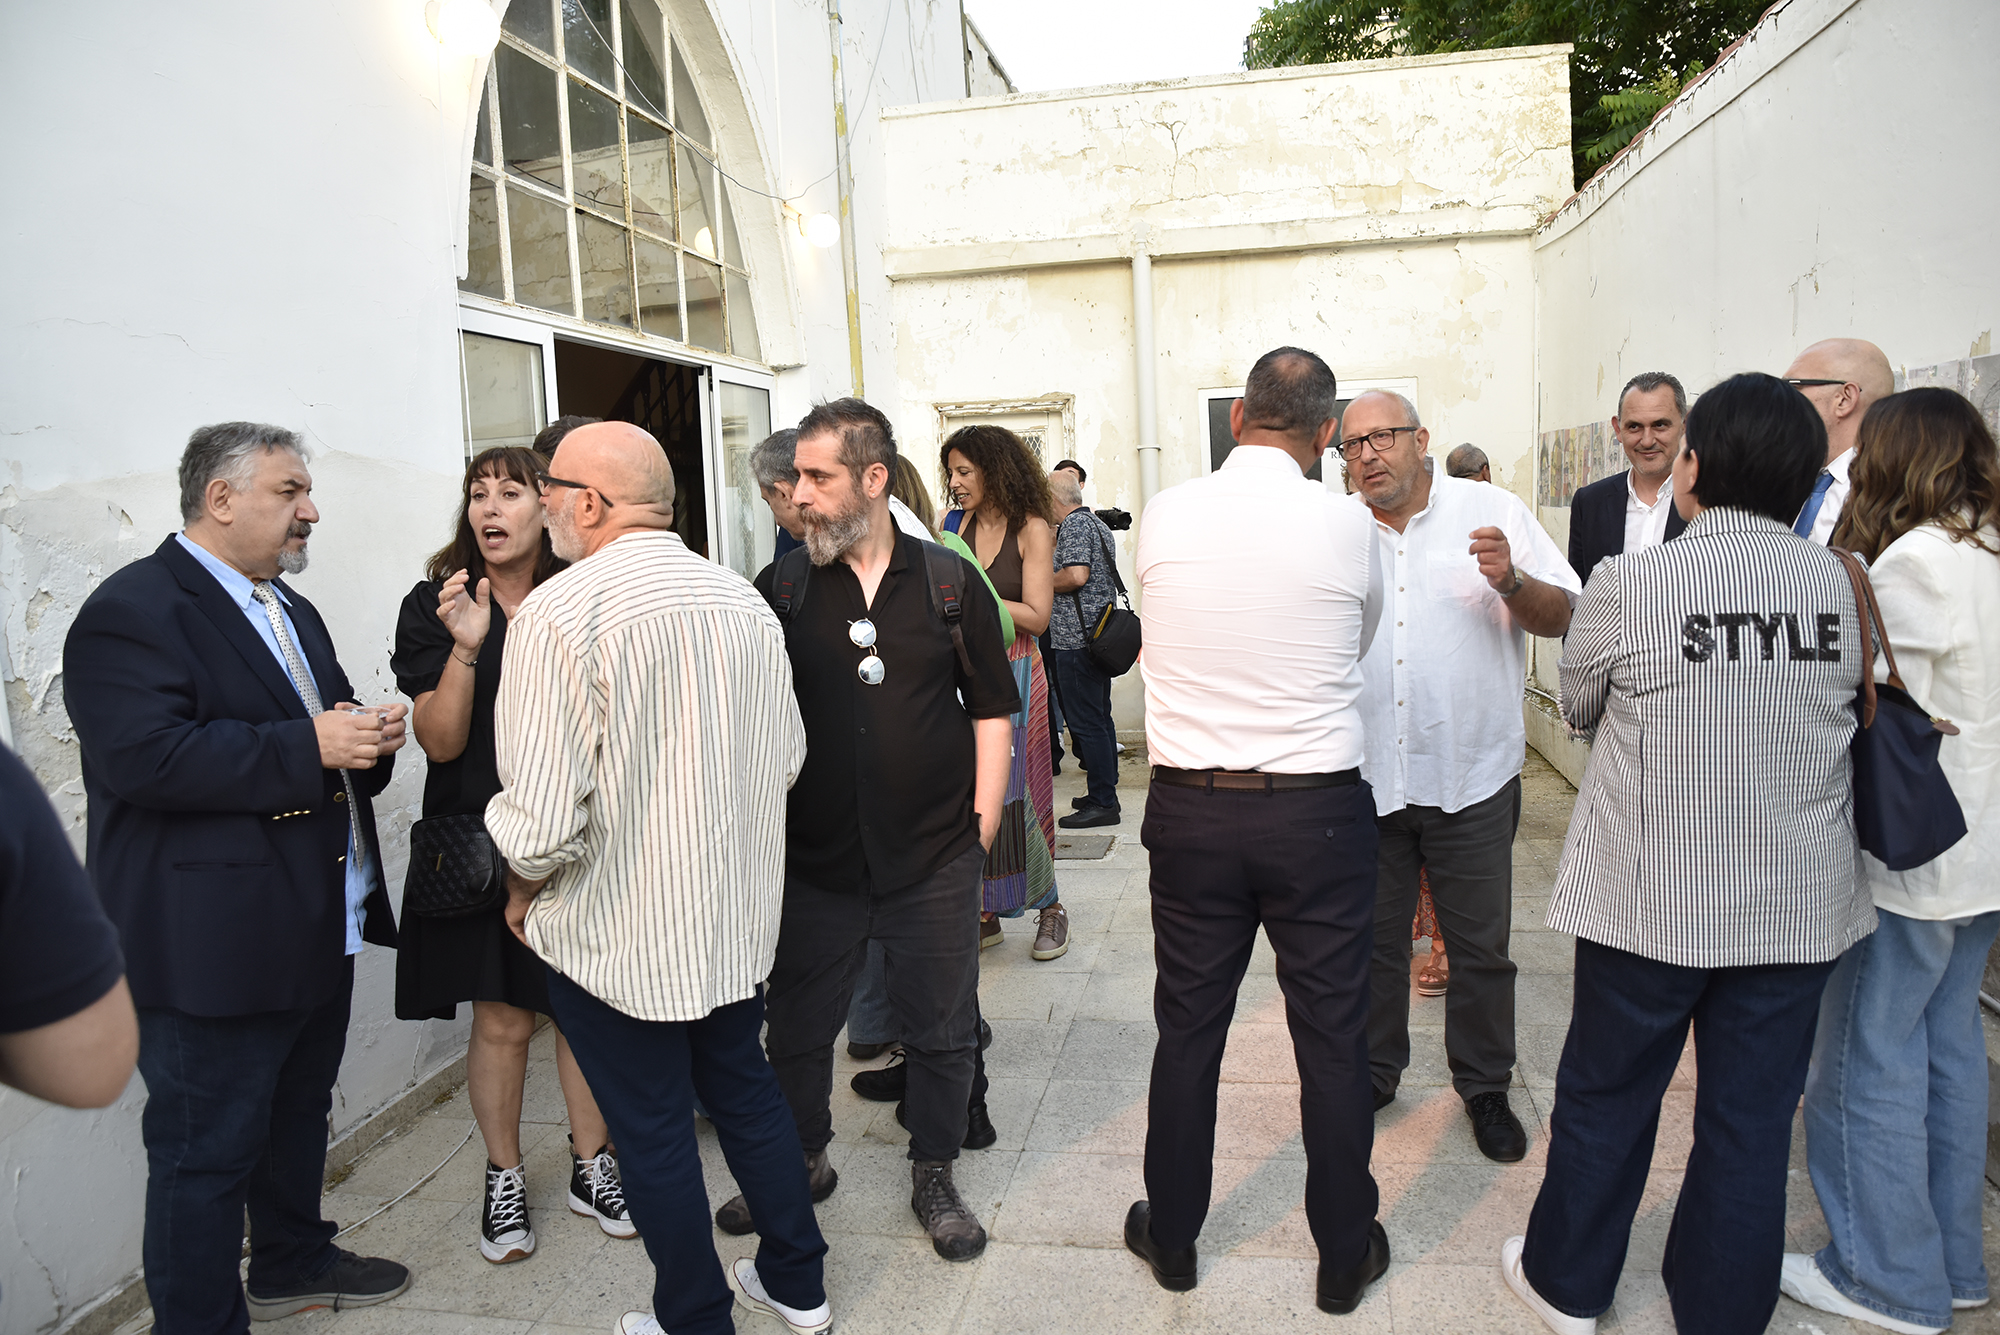 Eklektik Manifest – Lefkoşa Bienali’ne Giriş projesi 22 Haziran’a kadar Başkent Lefkoşa’da devam ediyor